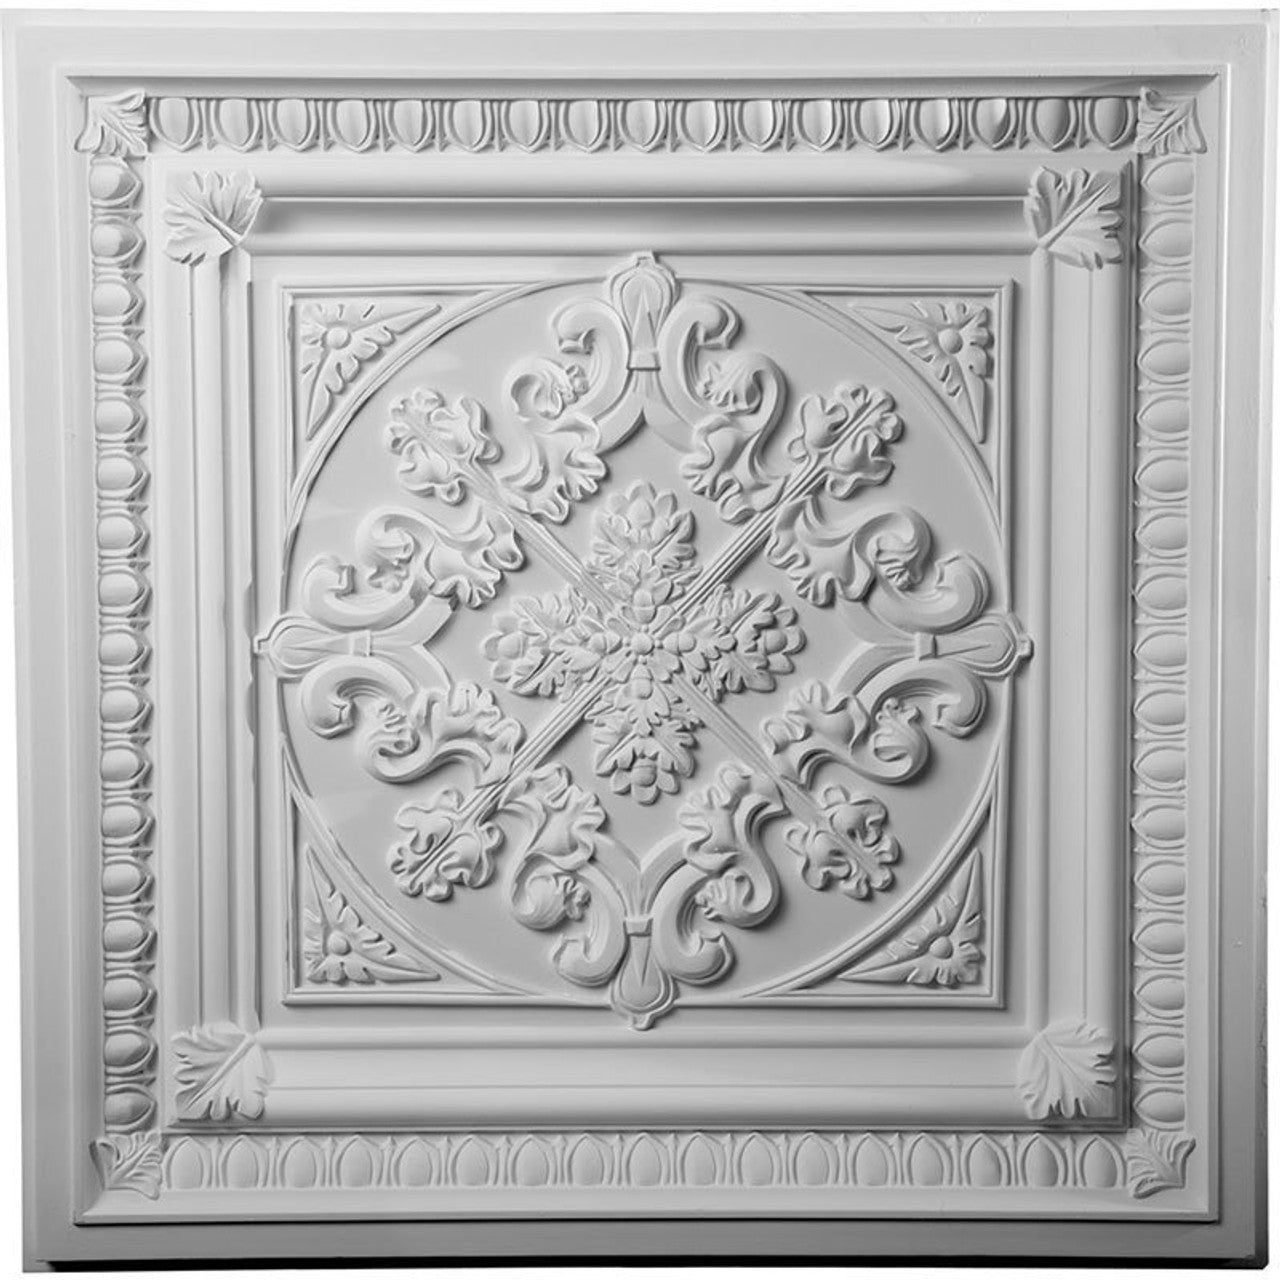 Edwards - Urethane Ceiling Tile - 24"x24"